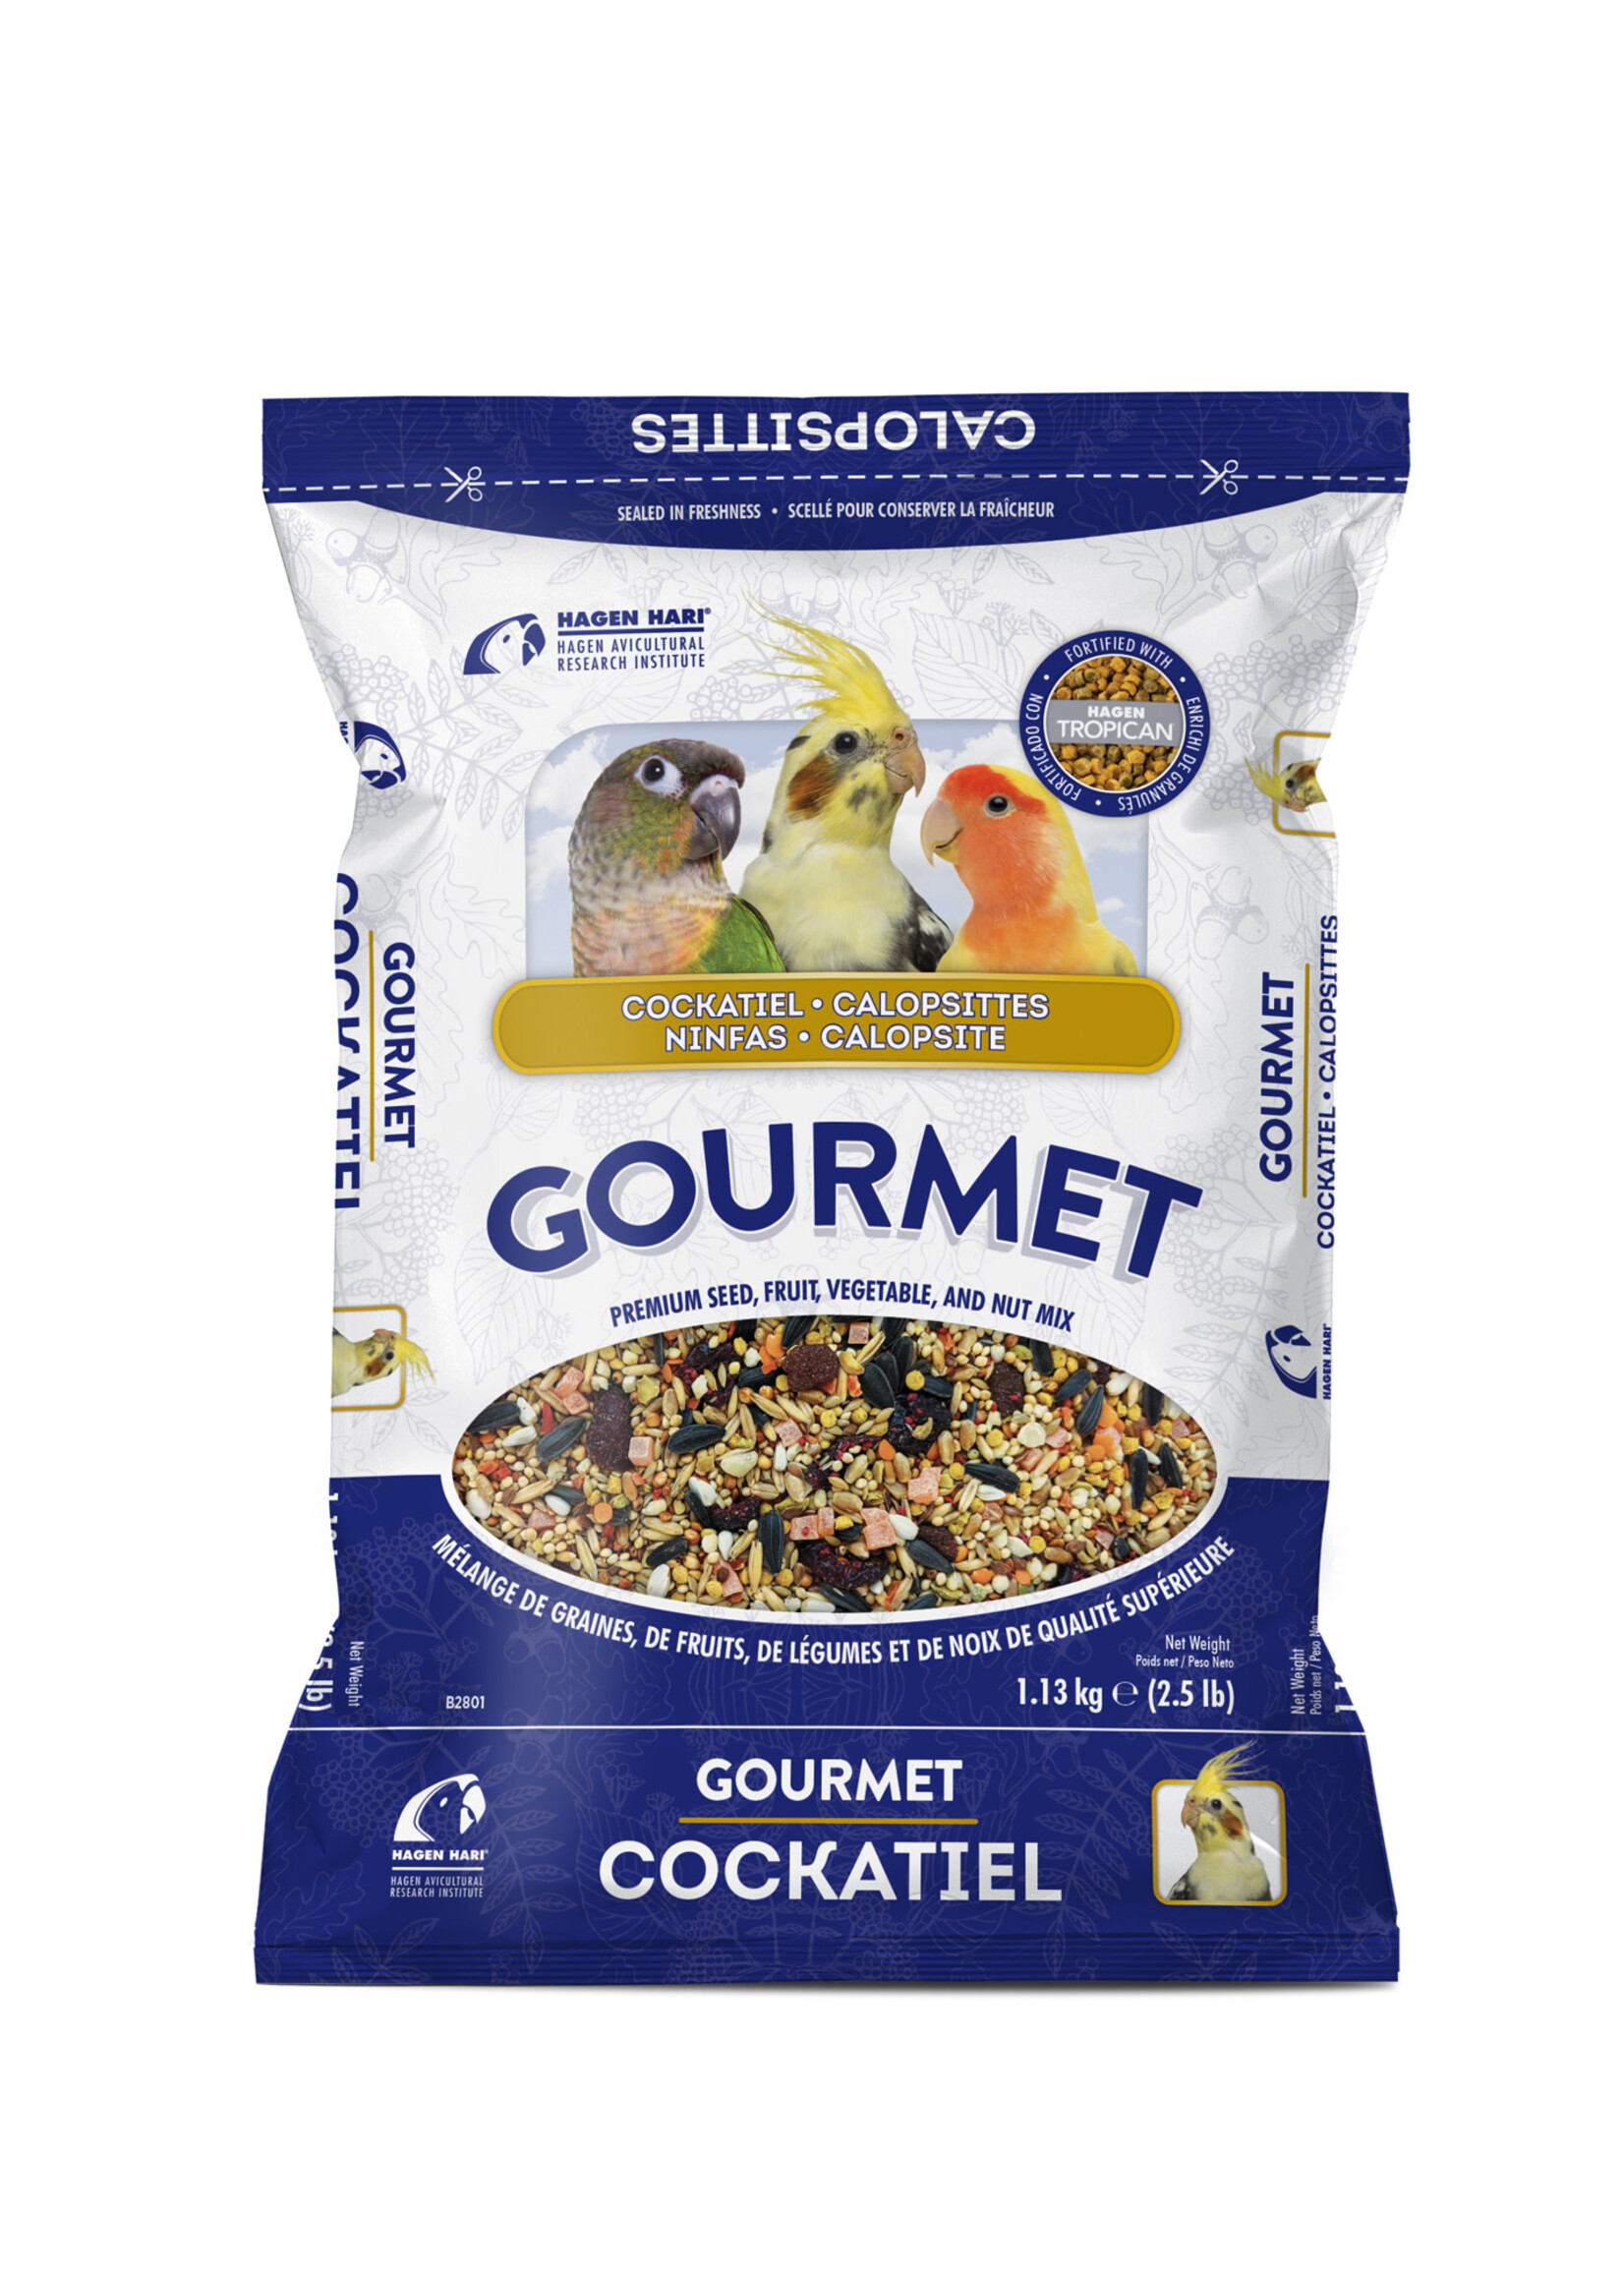 Hari HARI Gourmet Premium Seed Mix For Cockatiels - 1.13 kg (2.5 lb)